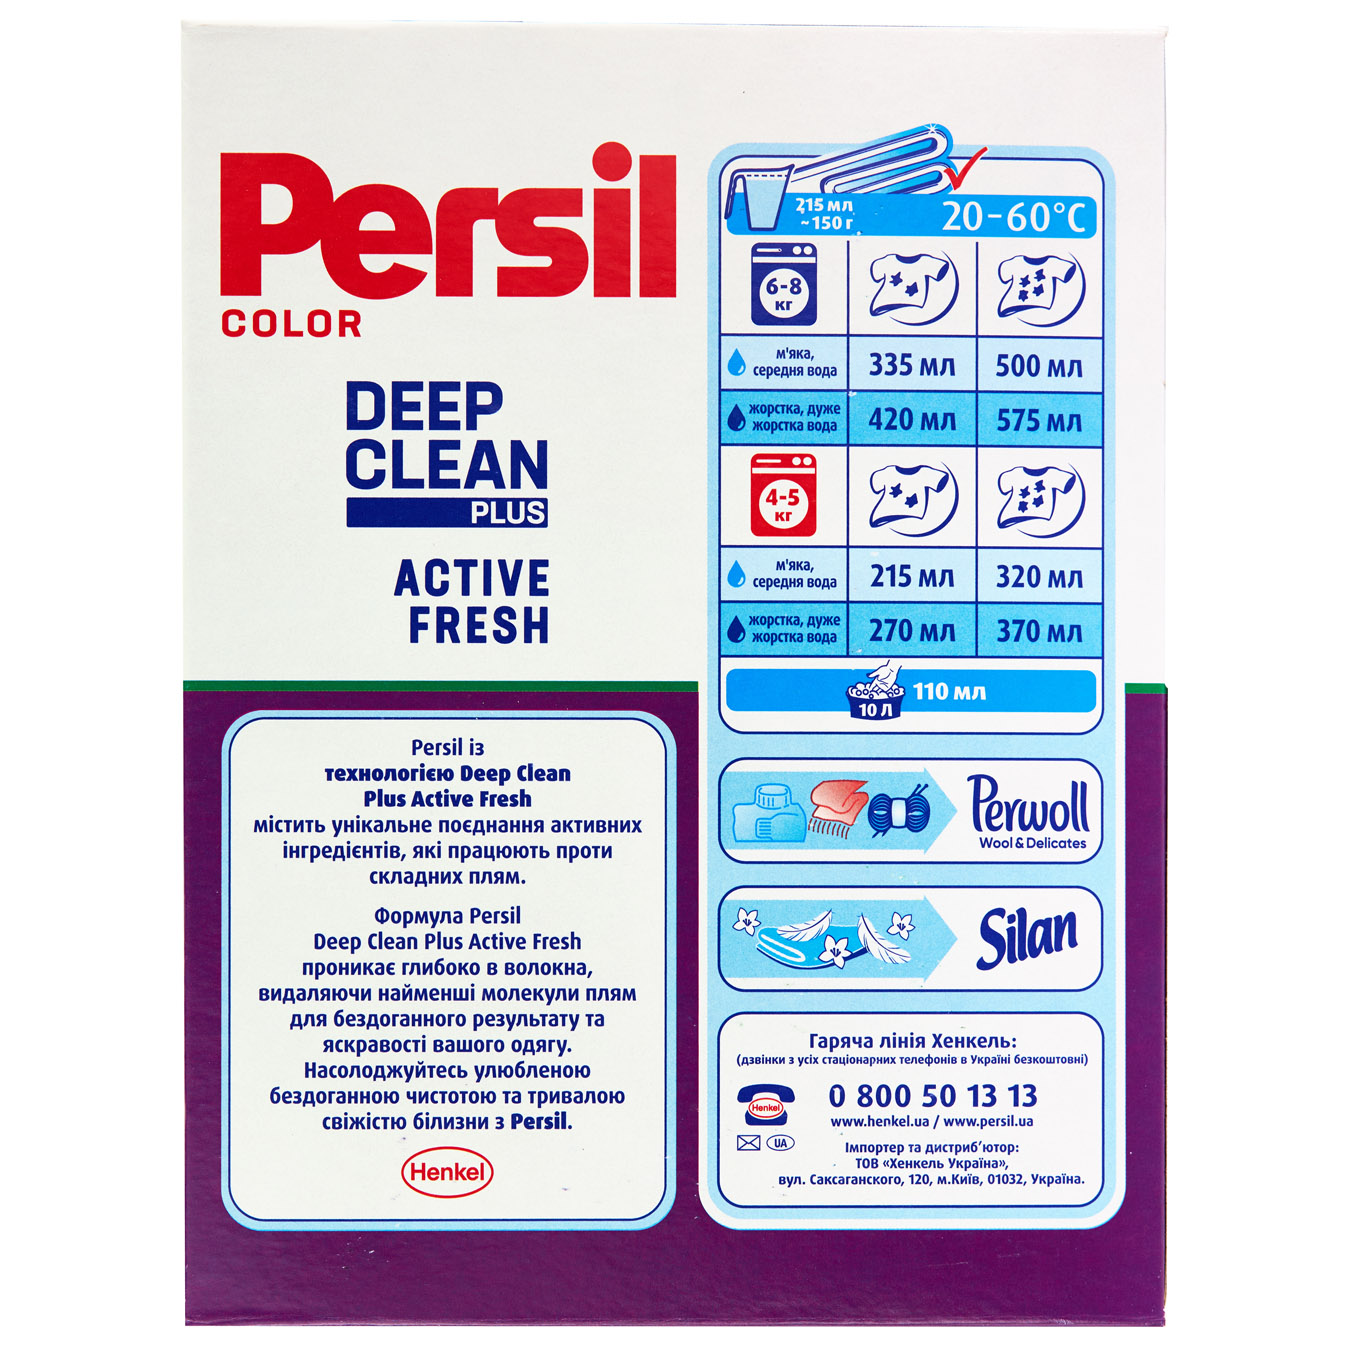 Persil Color Powder washing machine 400g 2